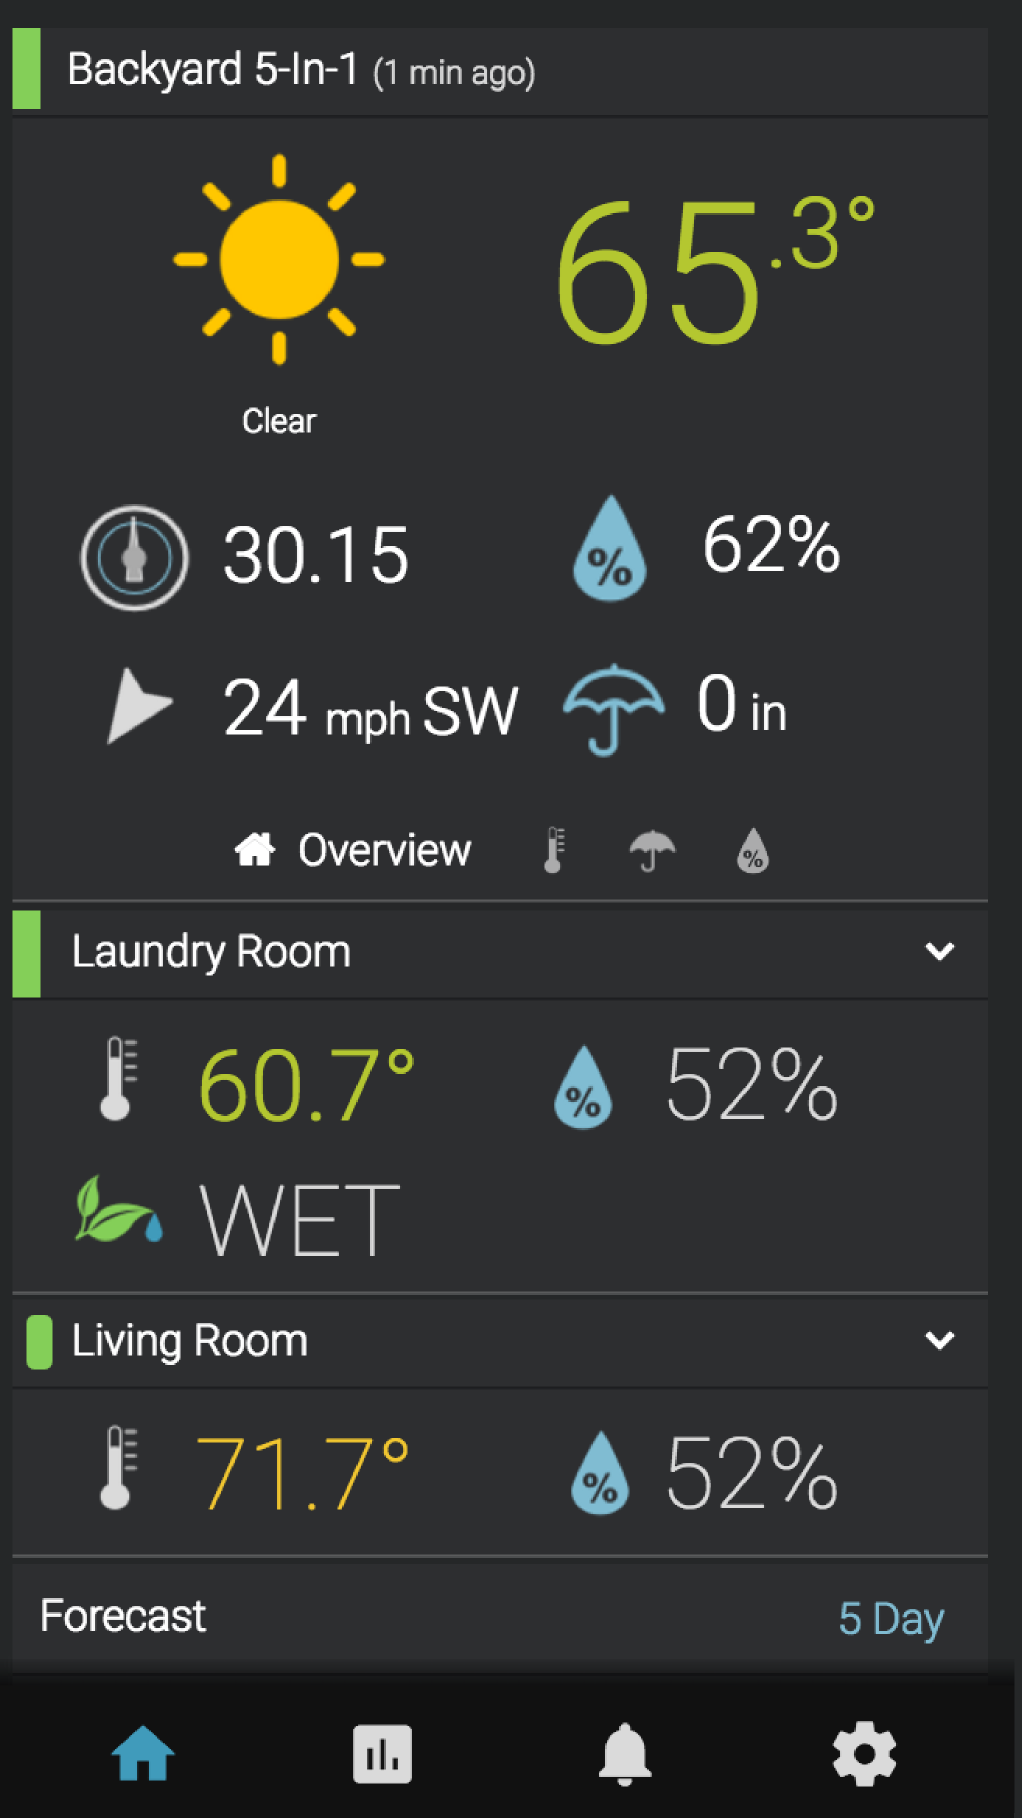 My AcuRite screenshot Backyard 5-in-1 overview indoor sensors